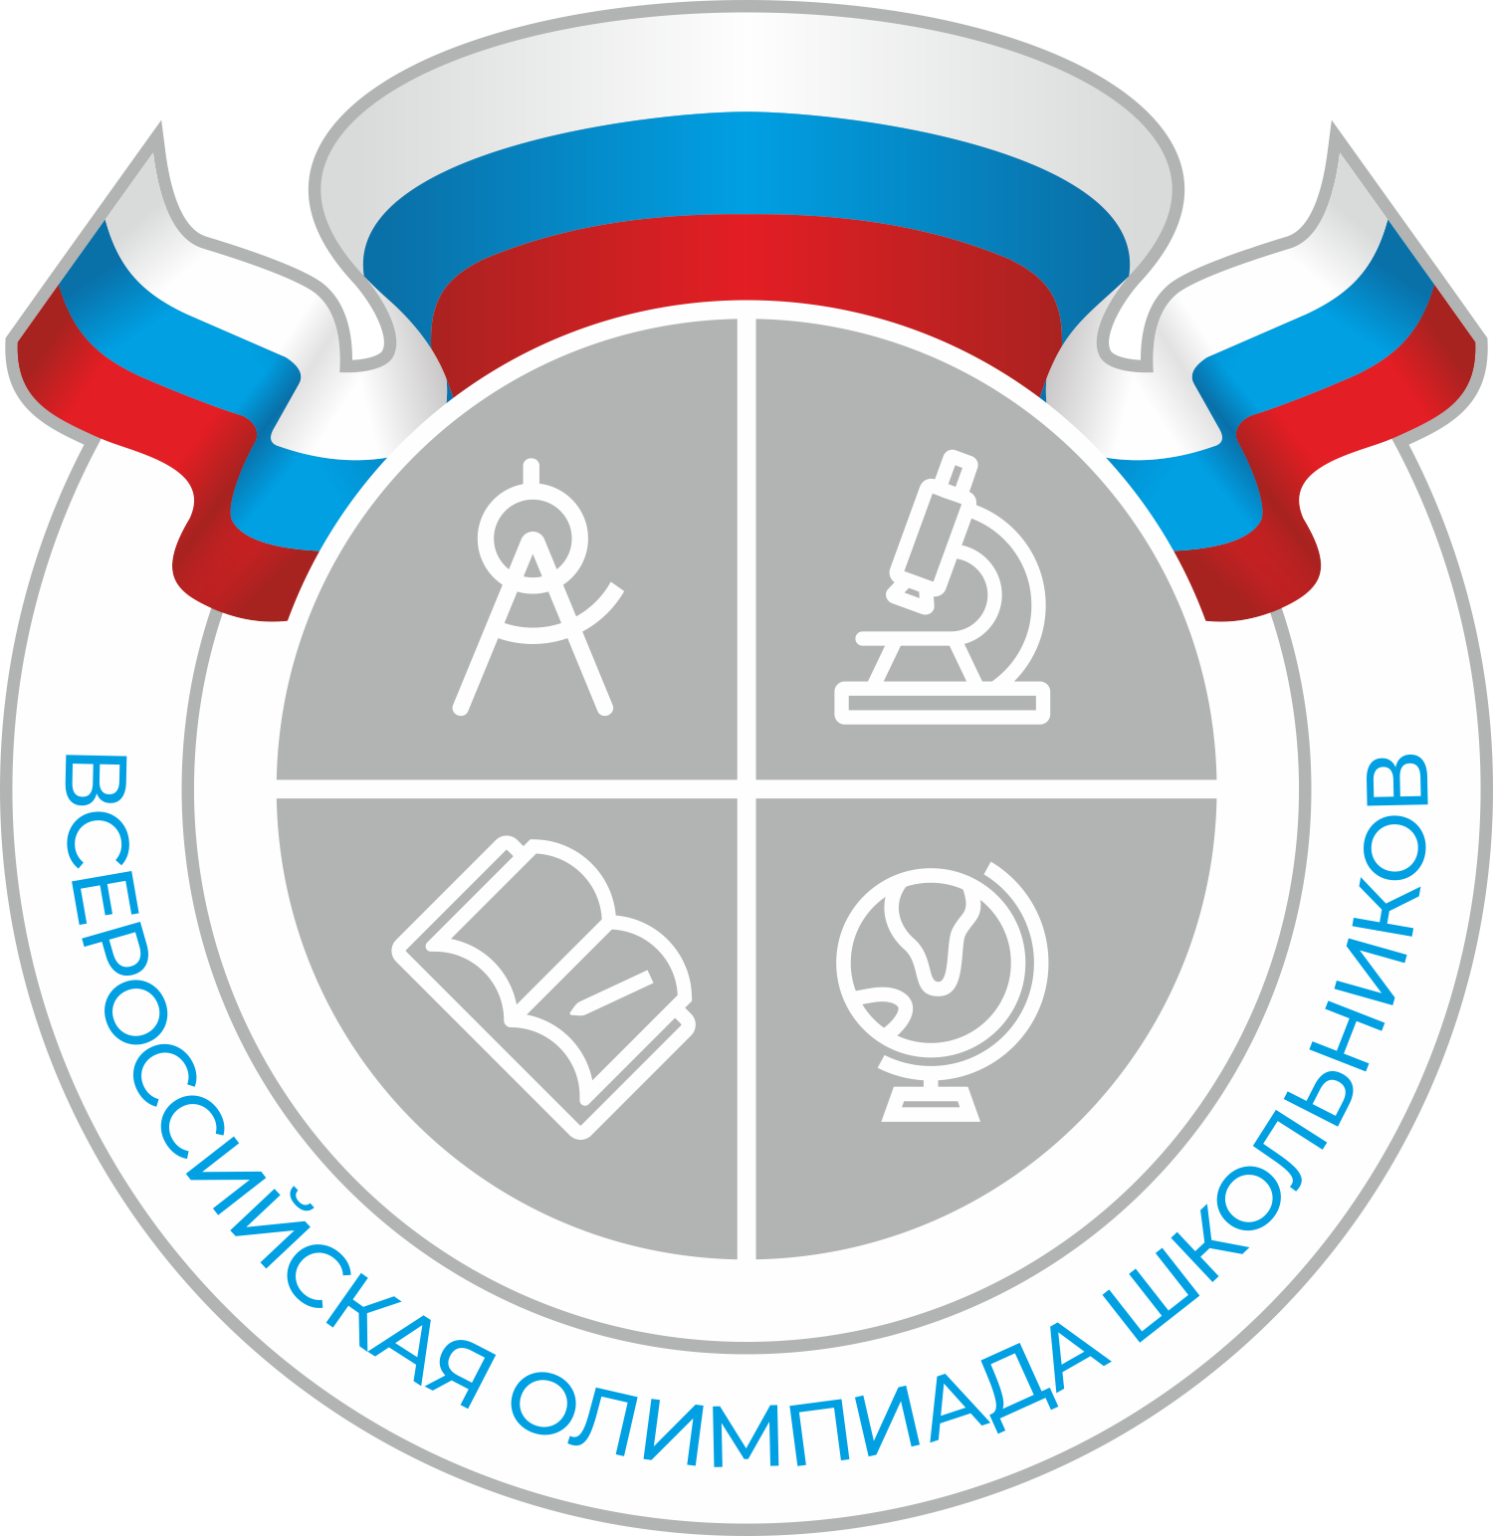 Эмблема Всероссийской олимпиады школьников.